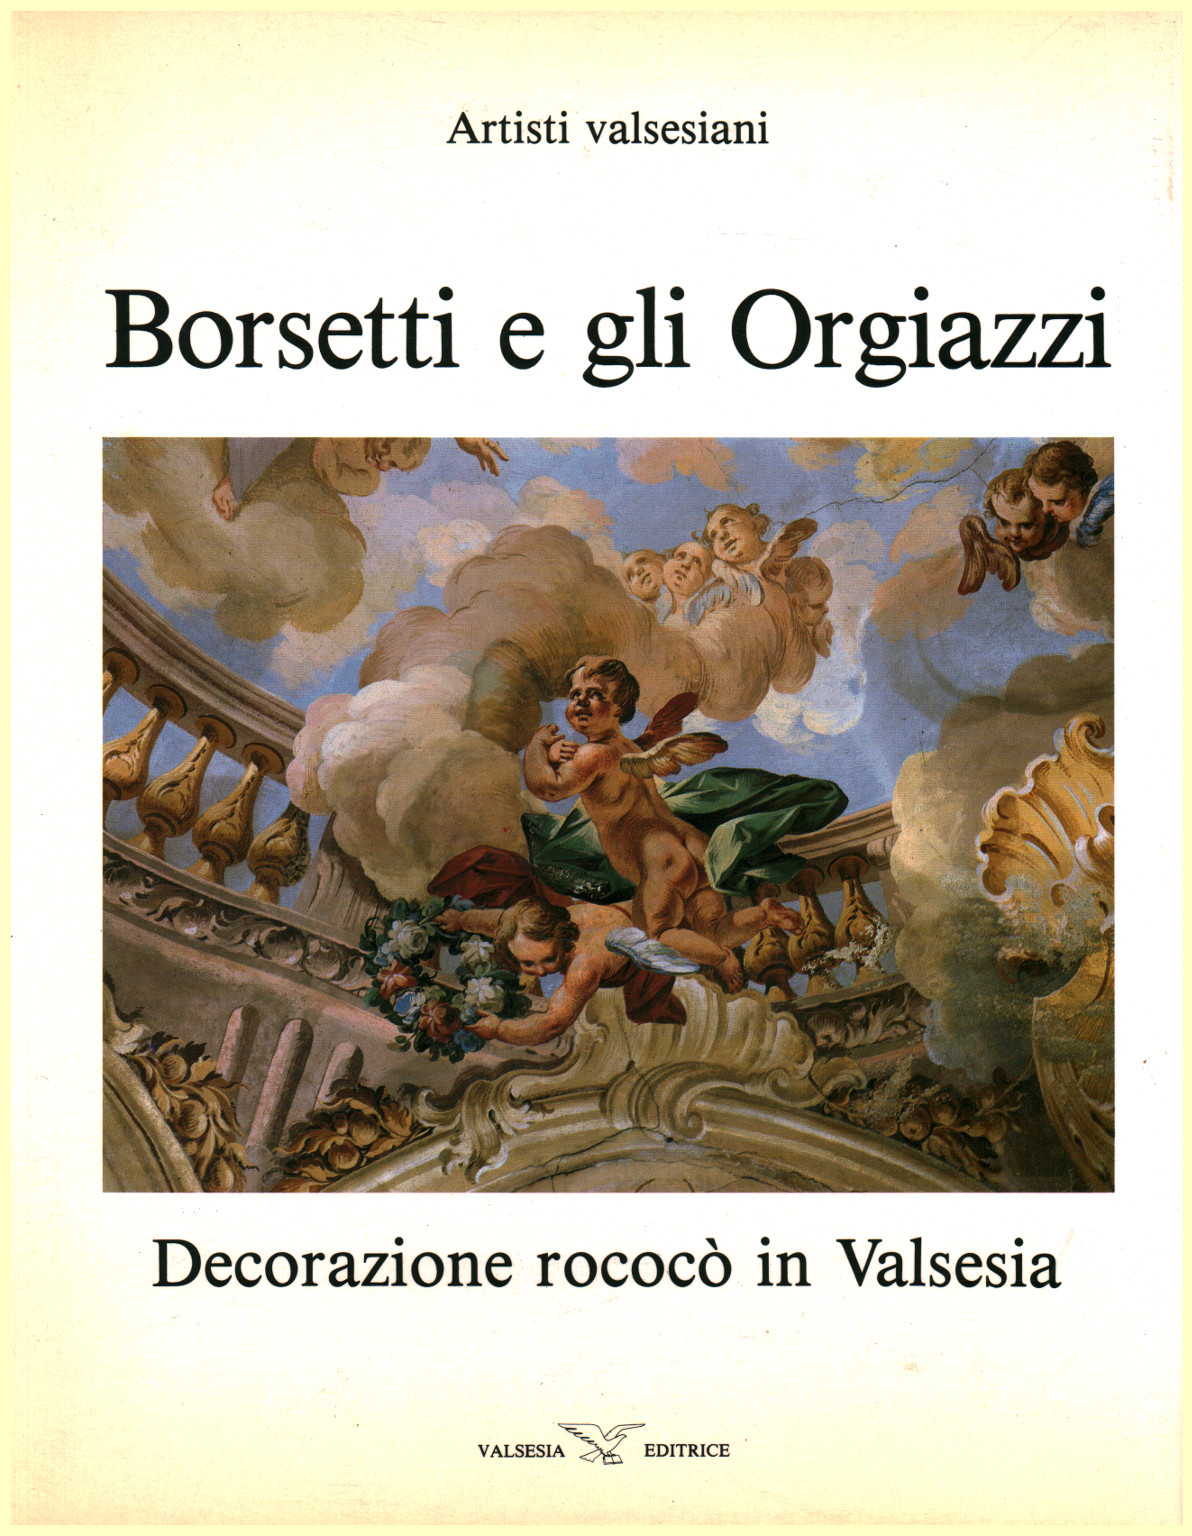 Borsetti, and Orgiazzi, s.a.